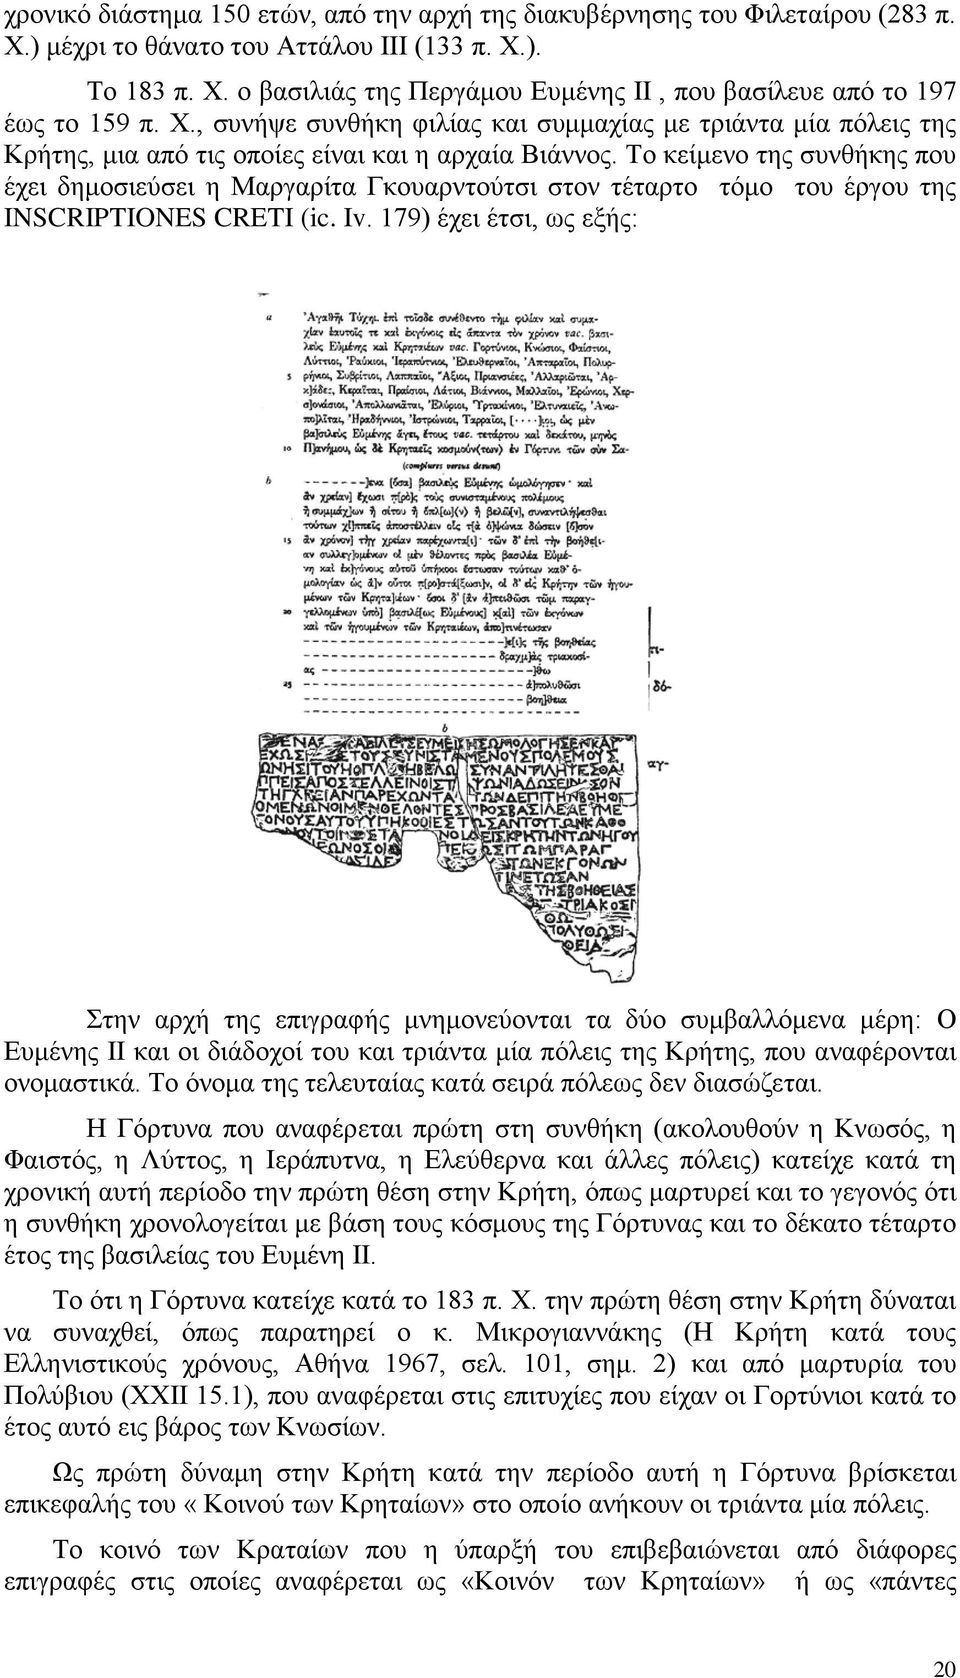 Το κείμενο της συνθήκης που έχει δημοσιεύσει η Μαργαρίτα Γκουαρντούτσι στον τέταρτο τόμο του έργου της INSCRIPTIONES CRETI (ic. Iv.